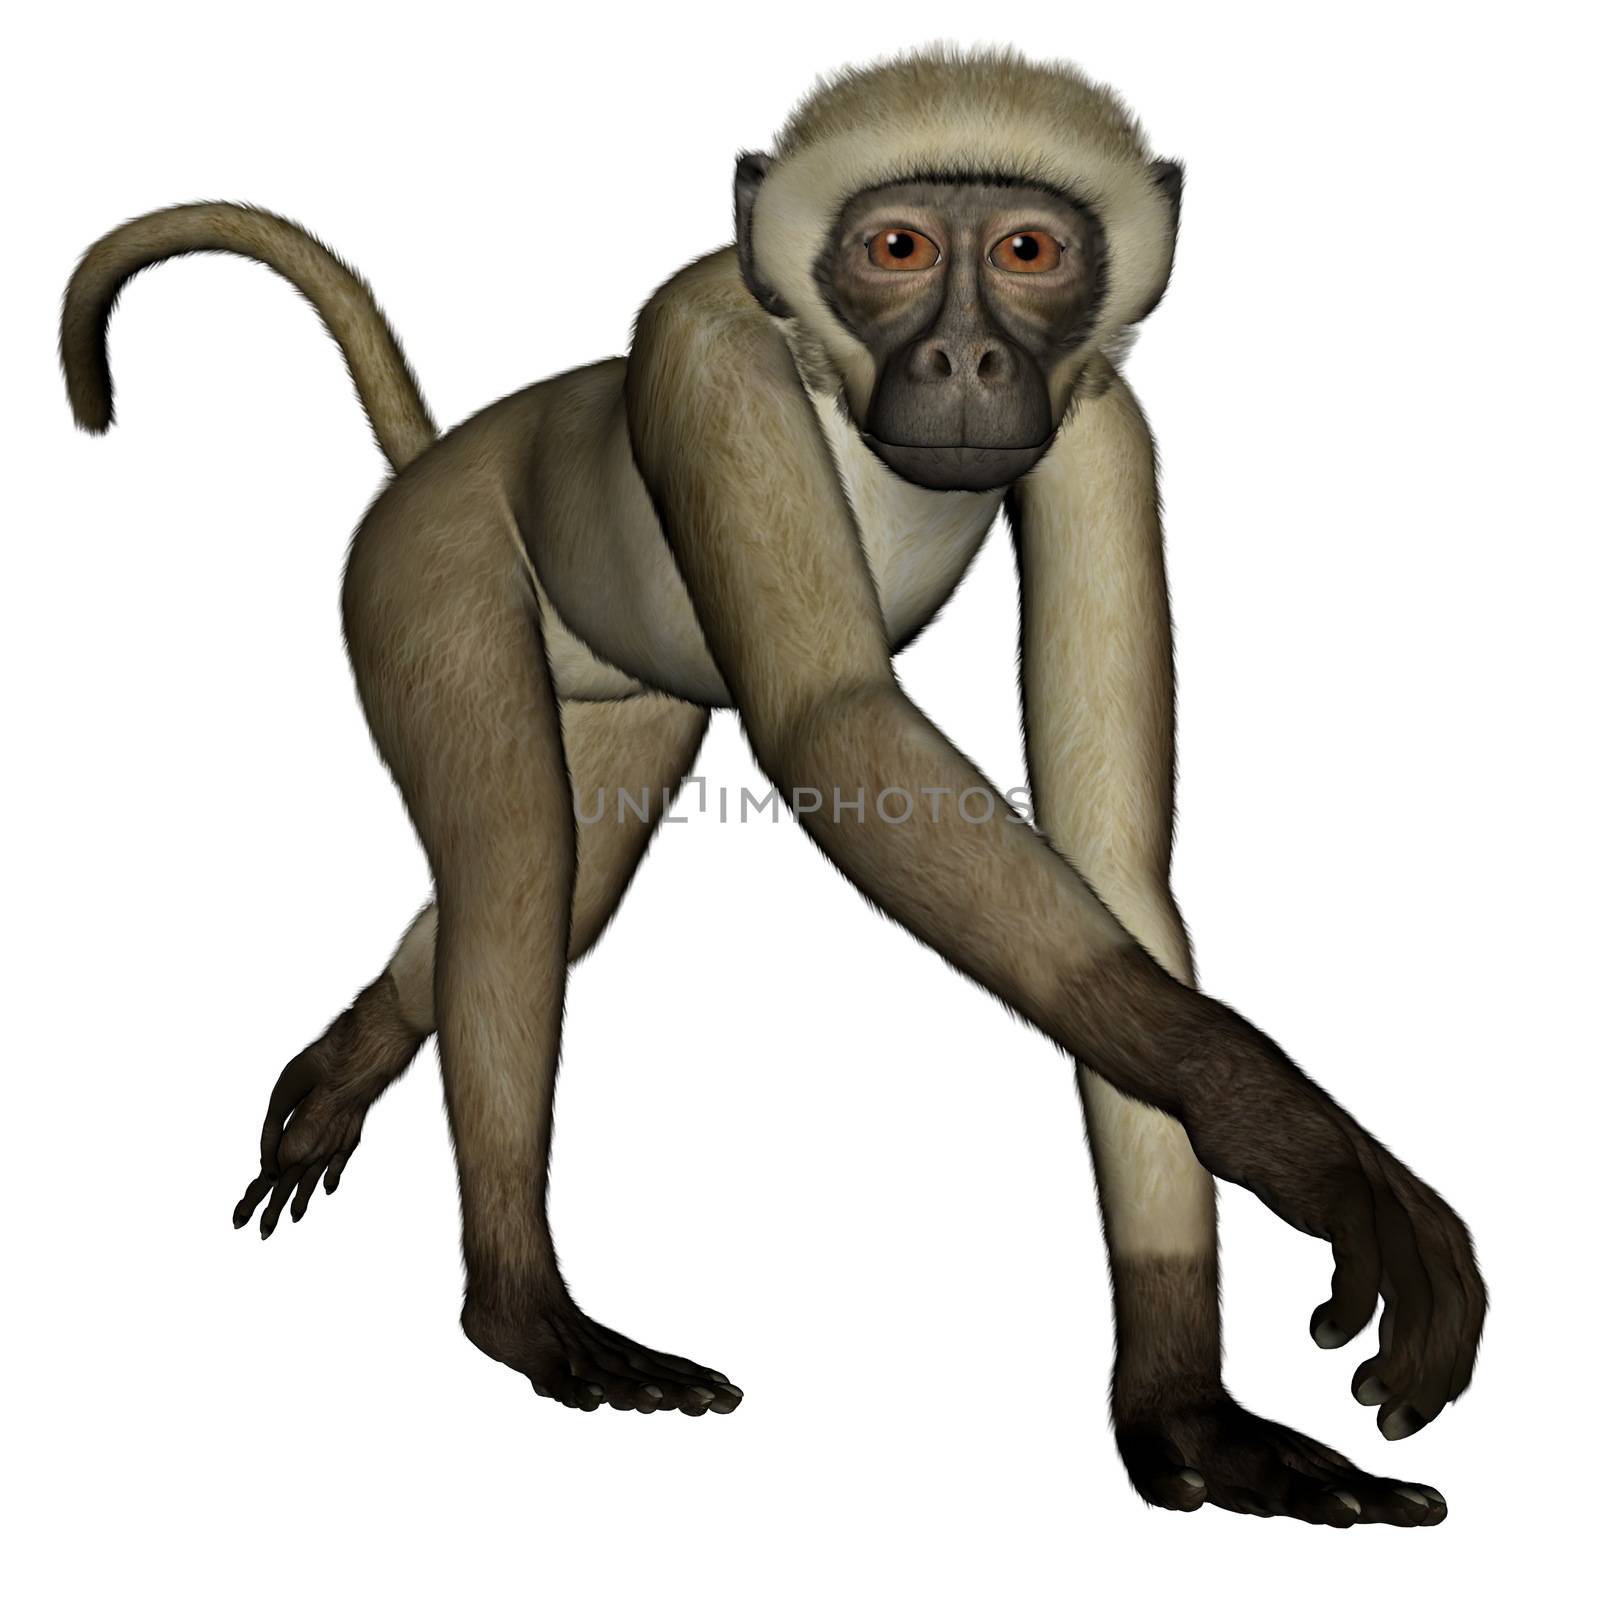 Monkey walking - 3D render by Elenaphotos21